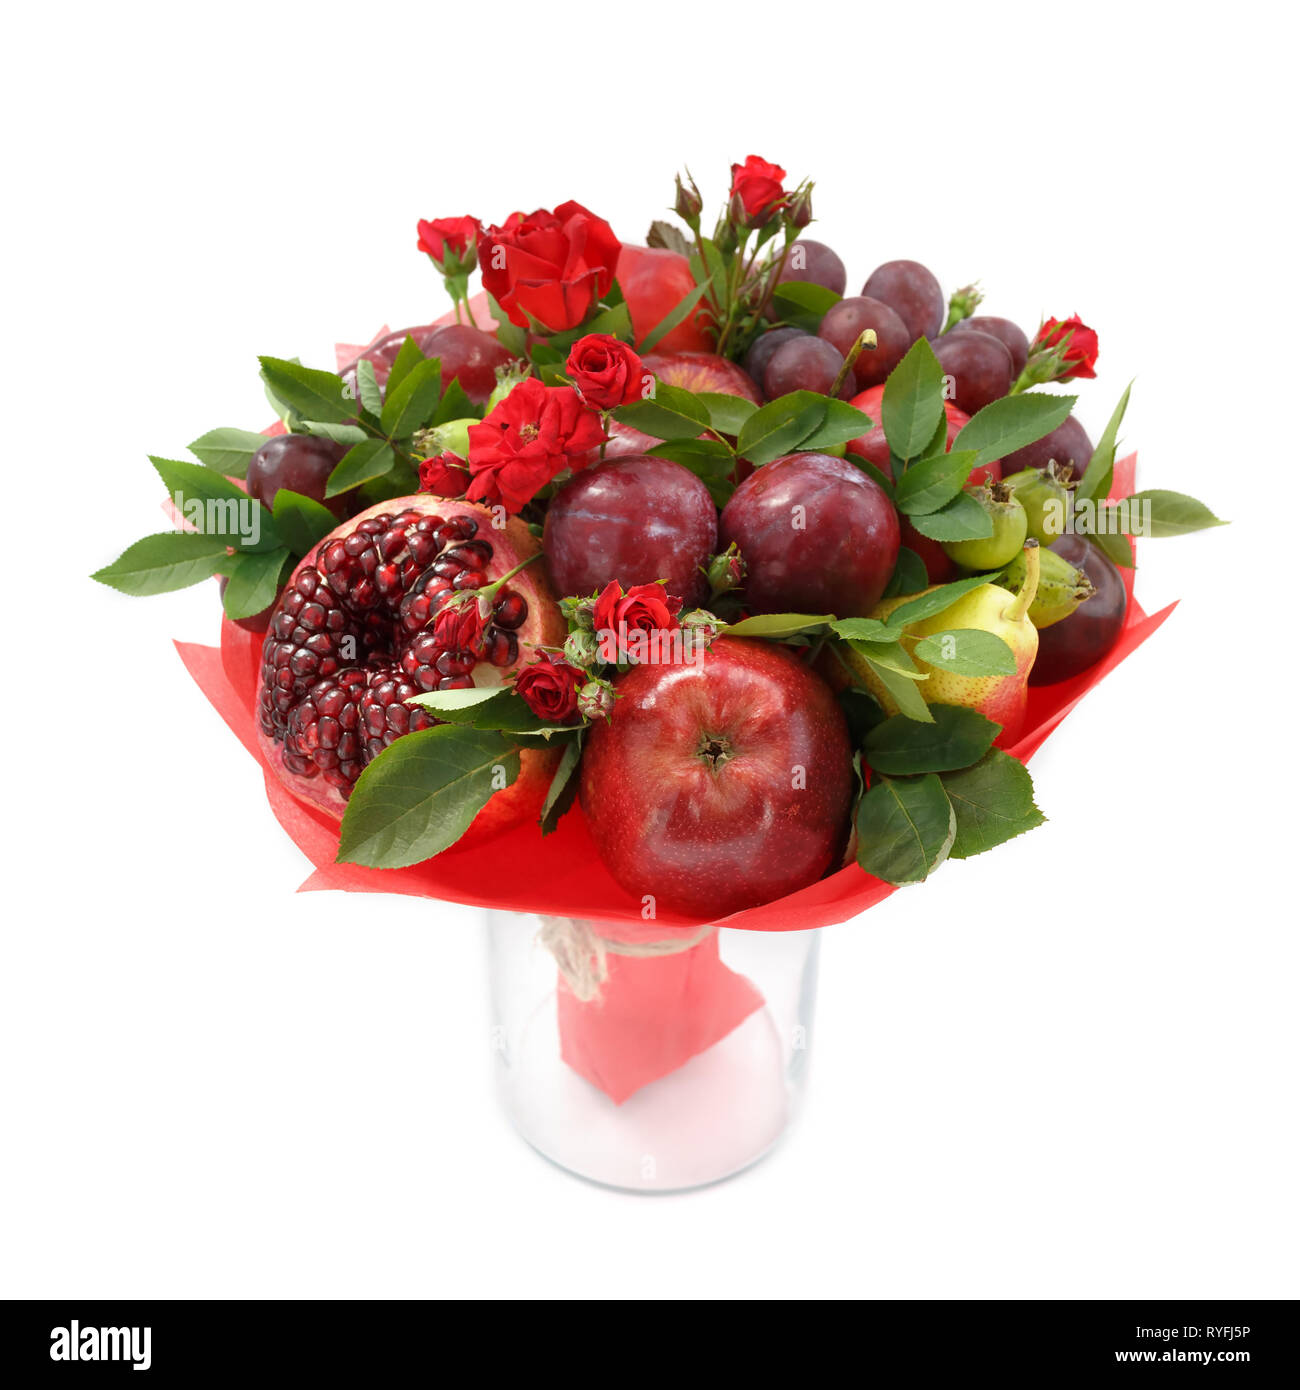 Originale bouquet fruttato composta di mele, prugne, pere, melograno e fiori di scarlet Rose in un vaso di vetro su uno sfondo bianco Foto Stock